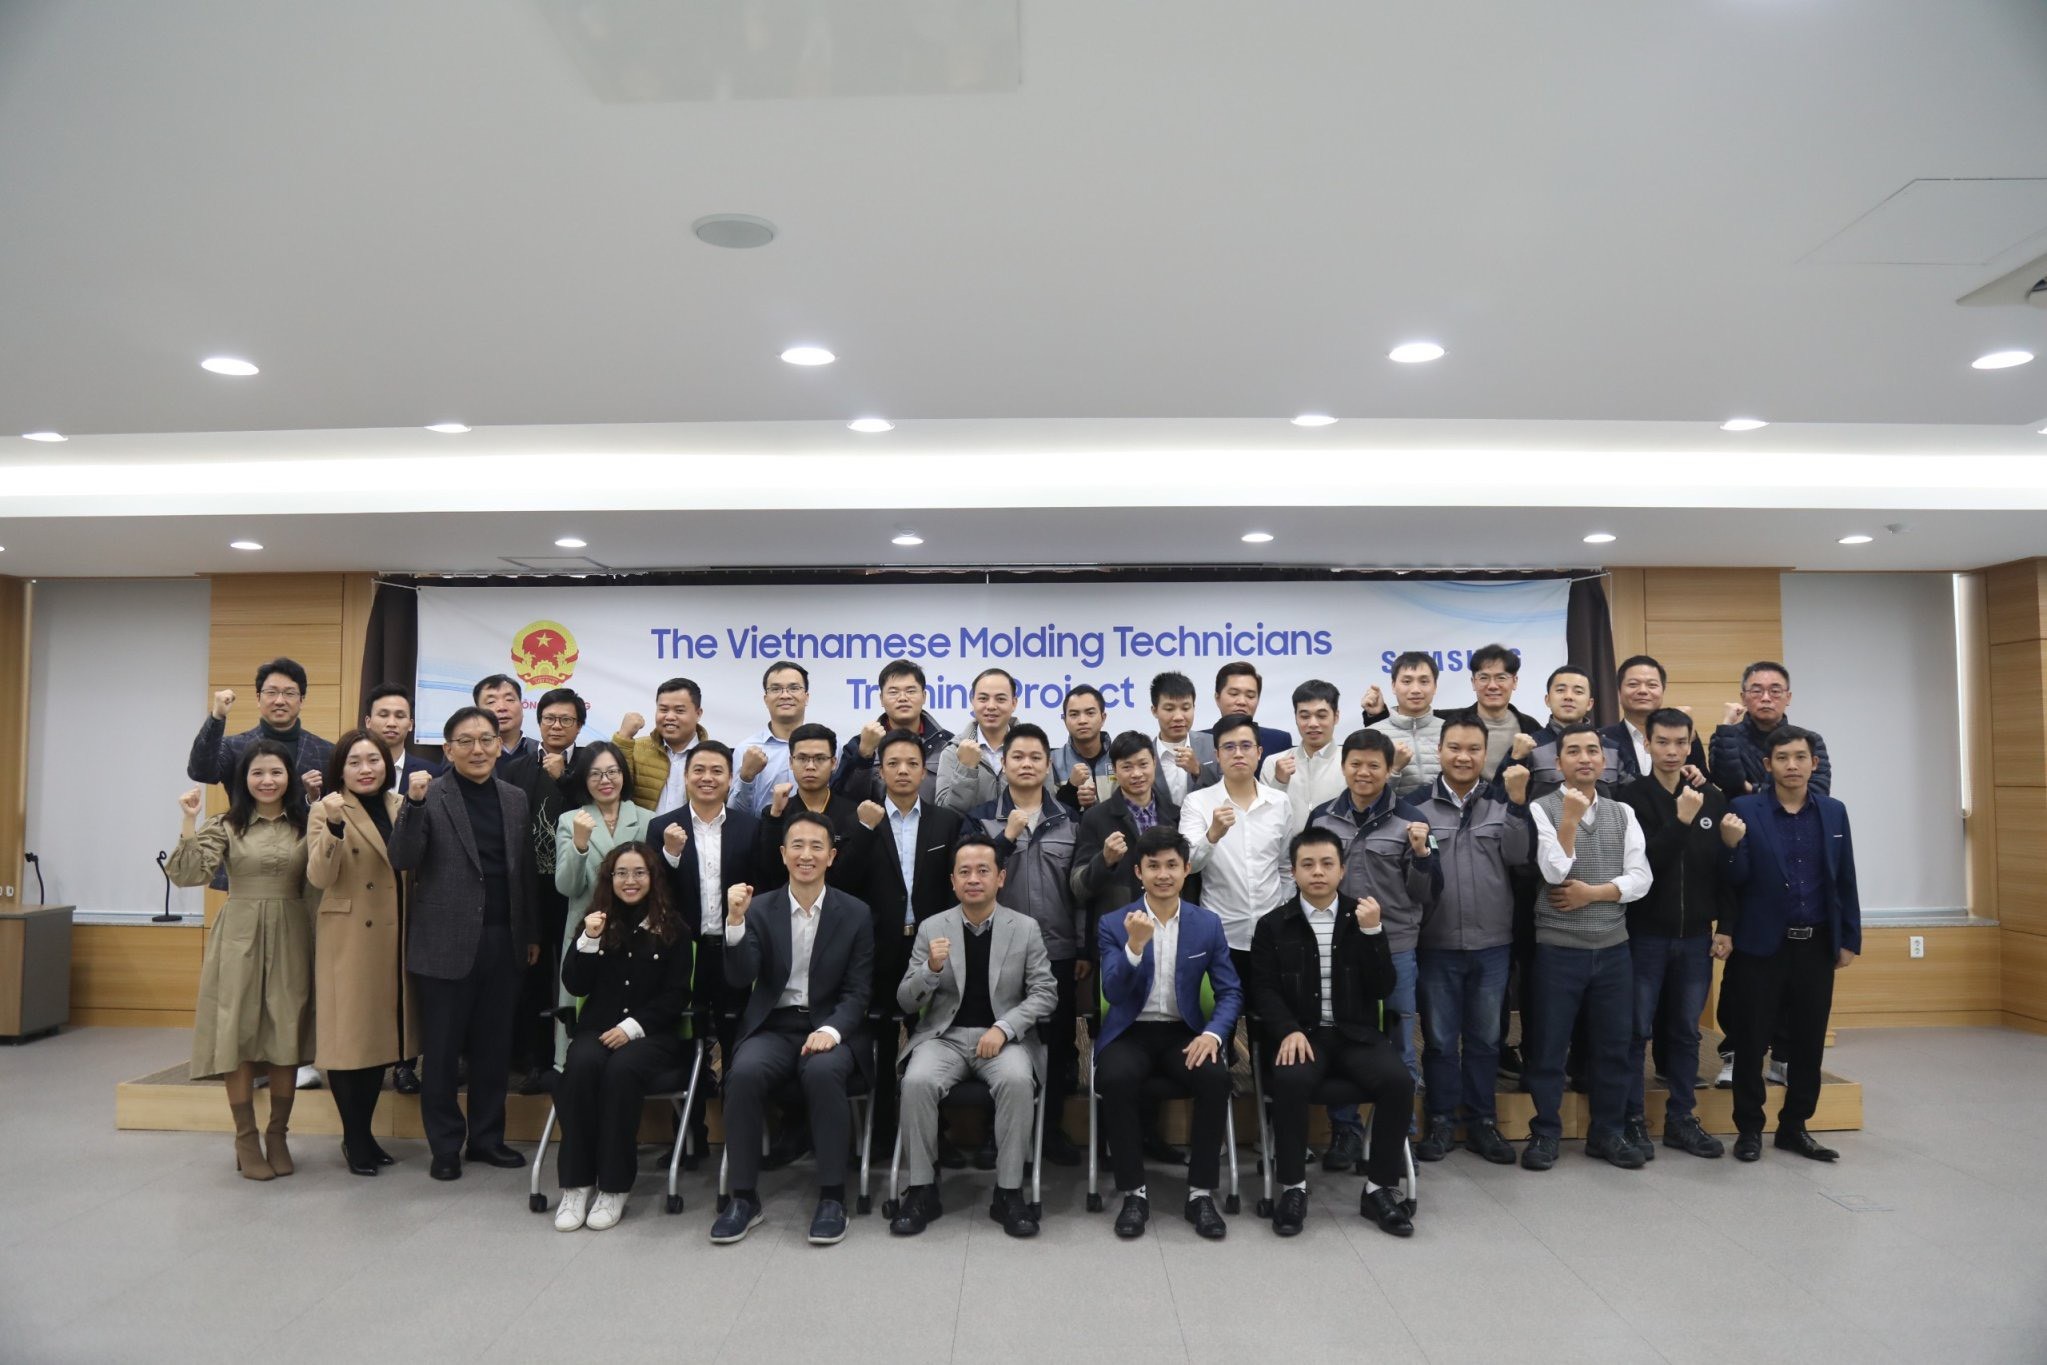 Bộ Công Thương và Samsung tổng kết khóa đào tạo kỹ sư khuôn mẫu tại Hàn Quốc